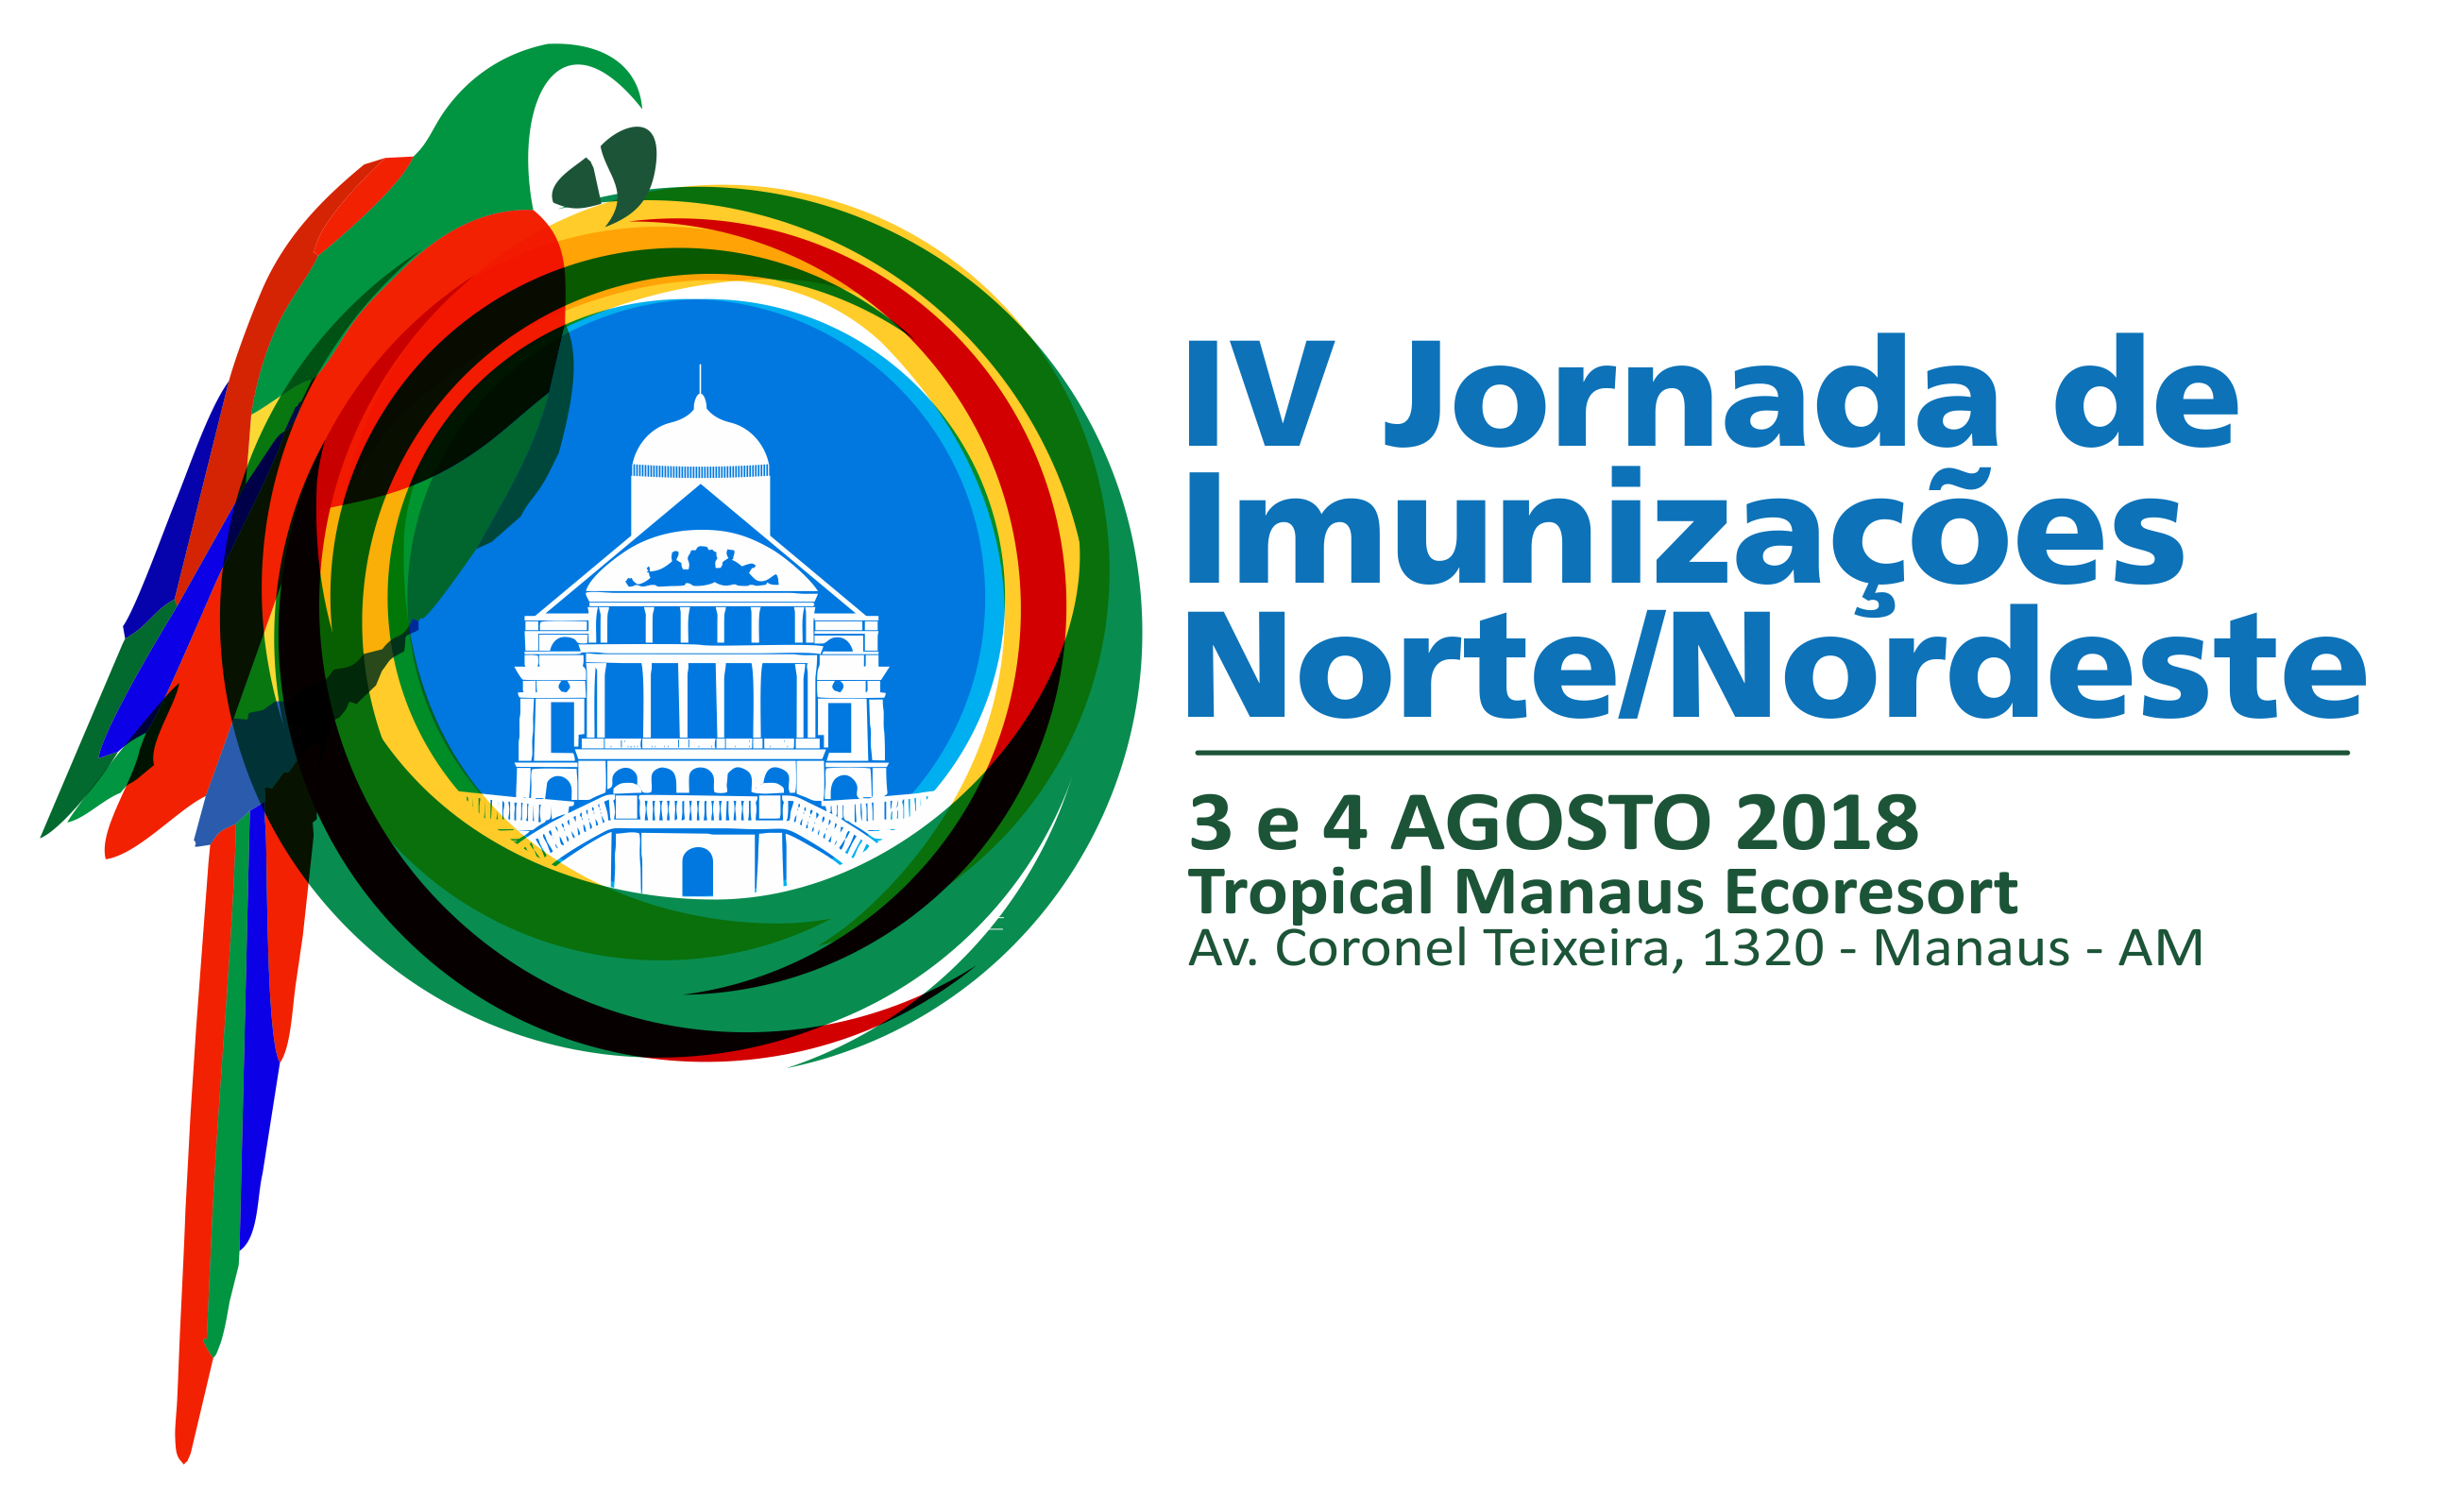 IV JORNADA DE IMUNIZAÇÕES NORTE/NORDESTE